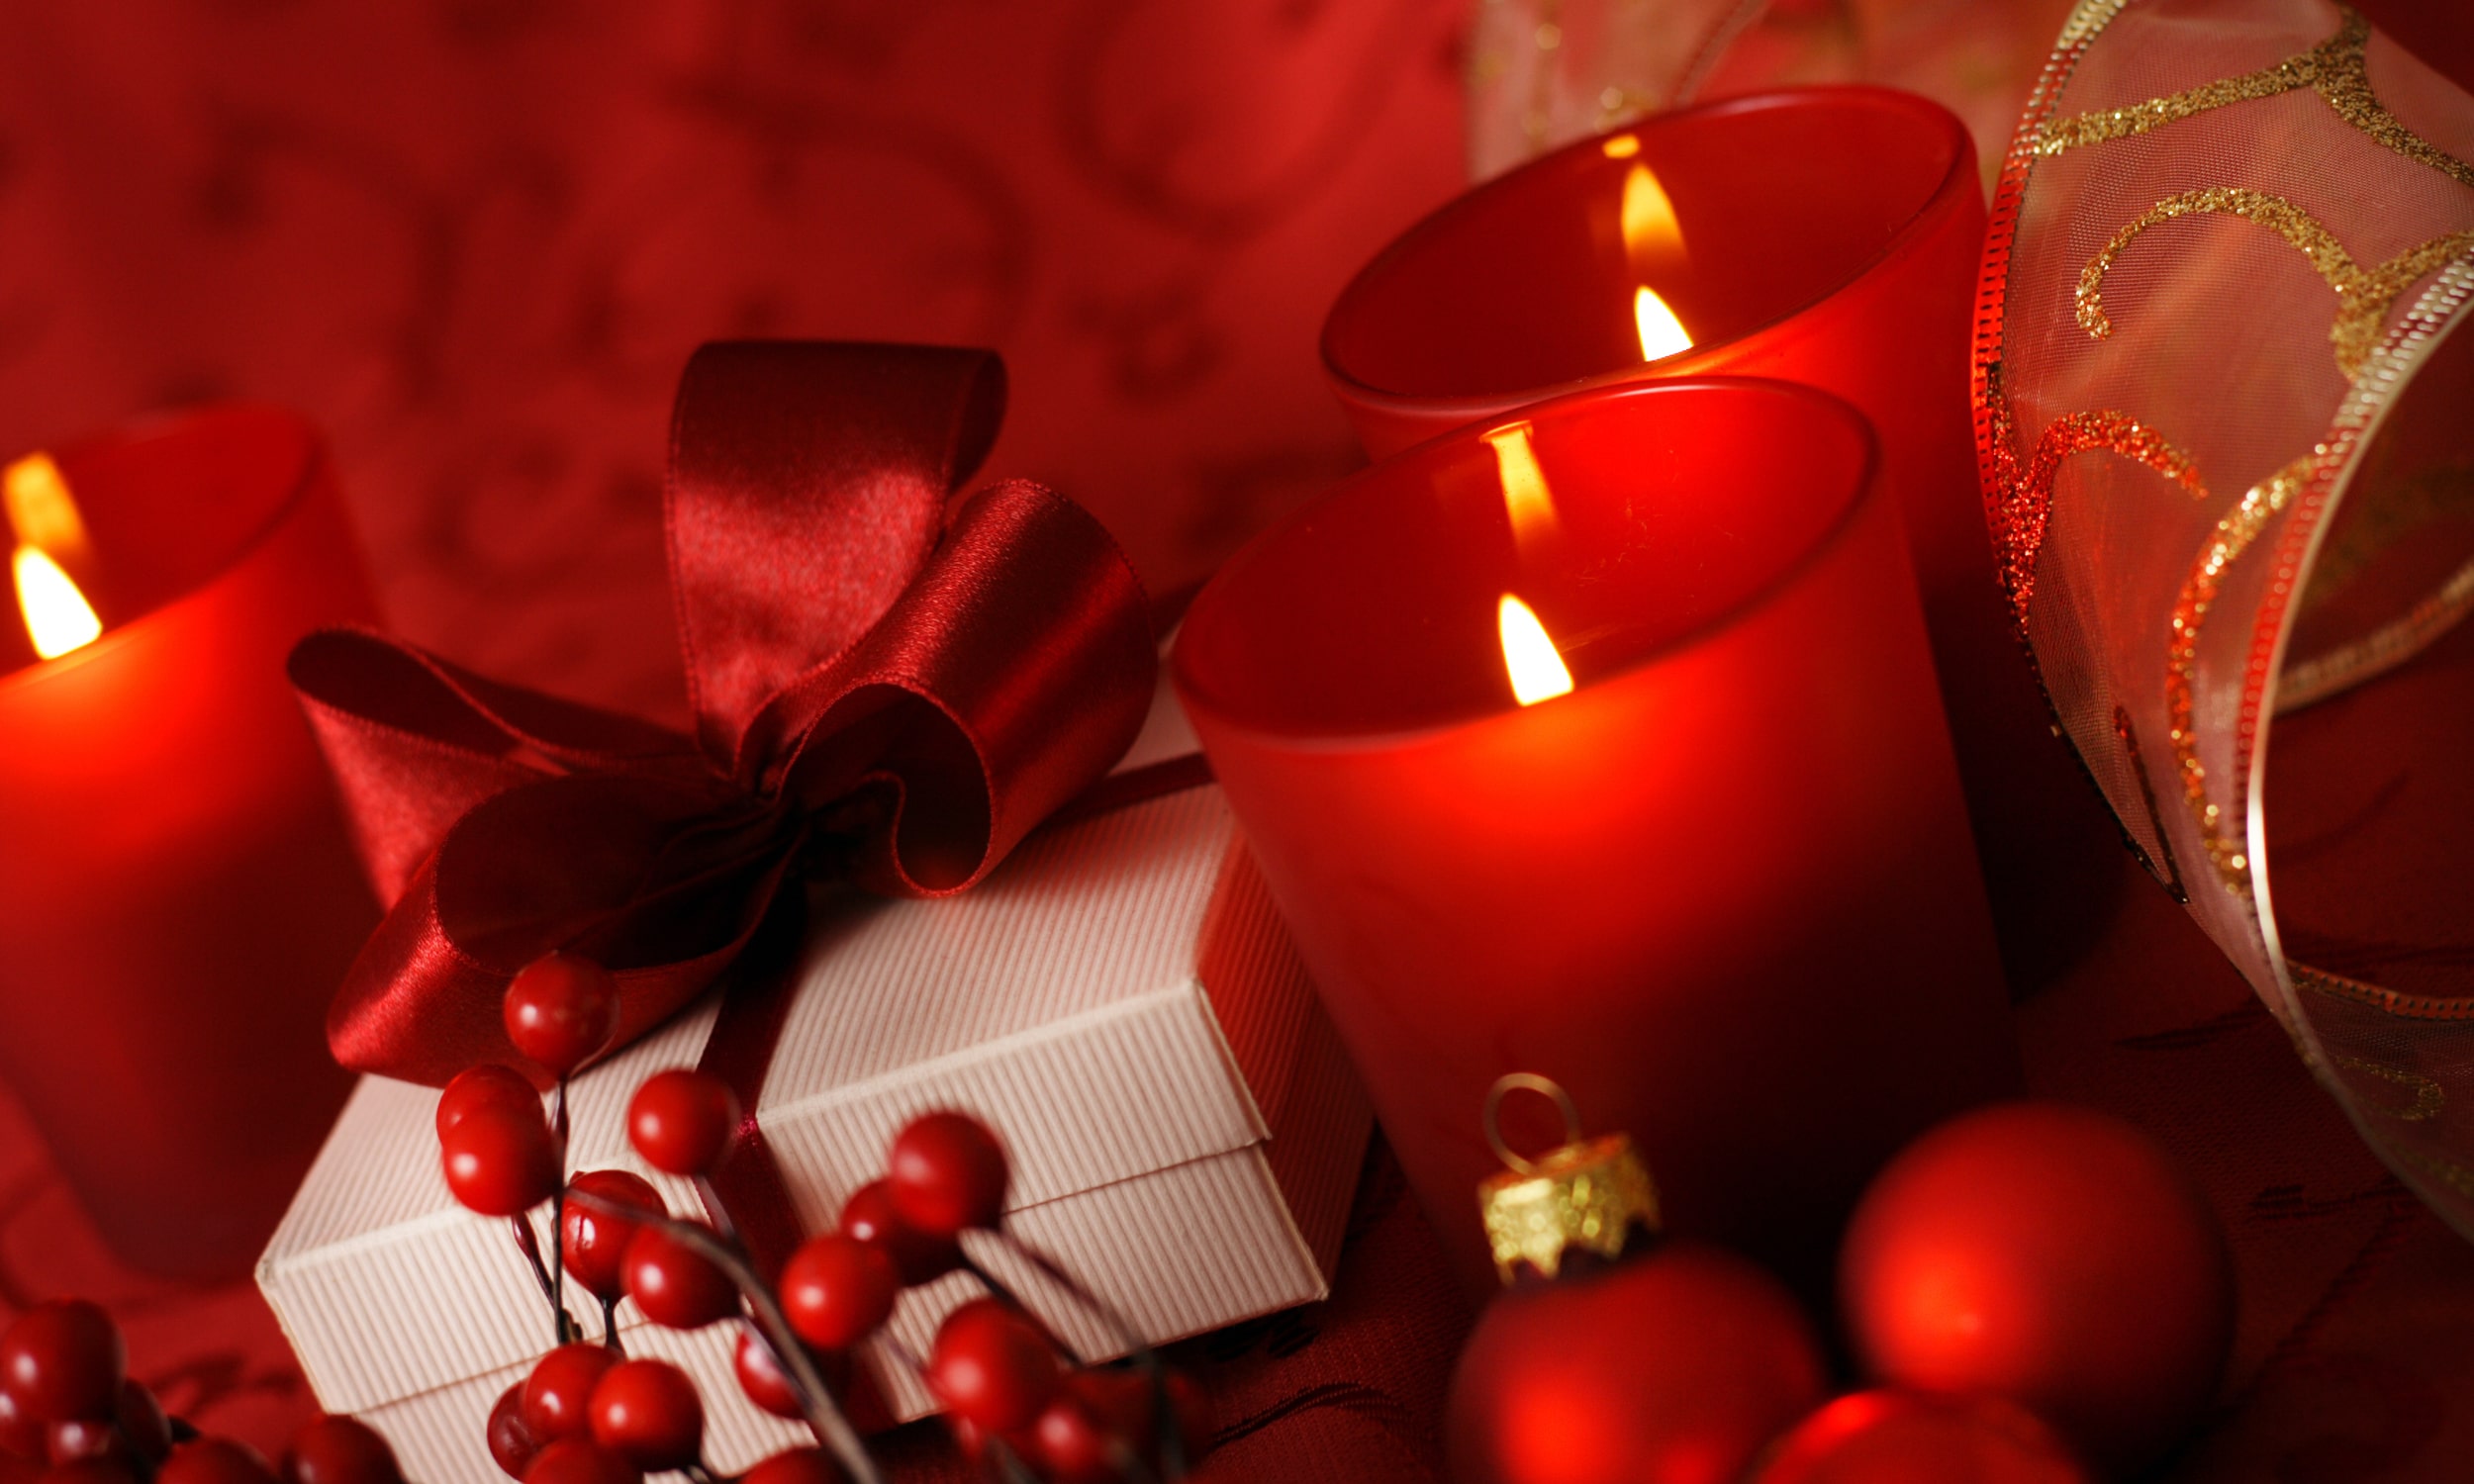 свечи в красных подсвечниках и подарок